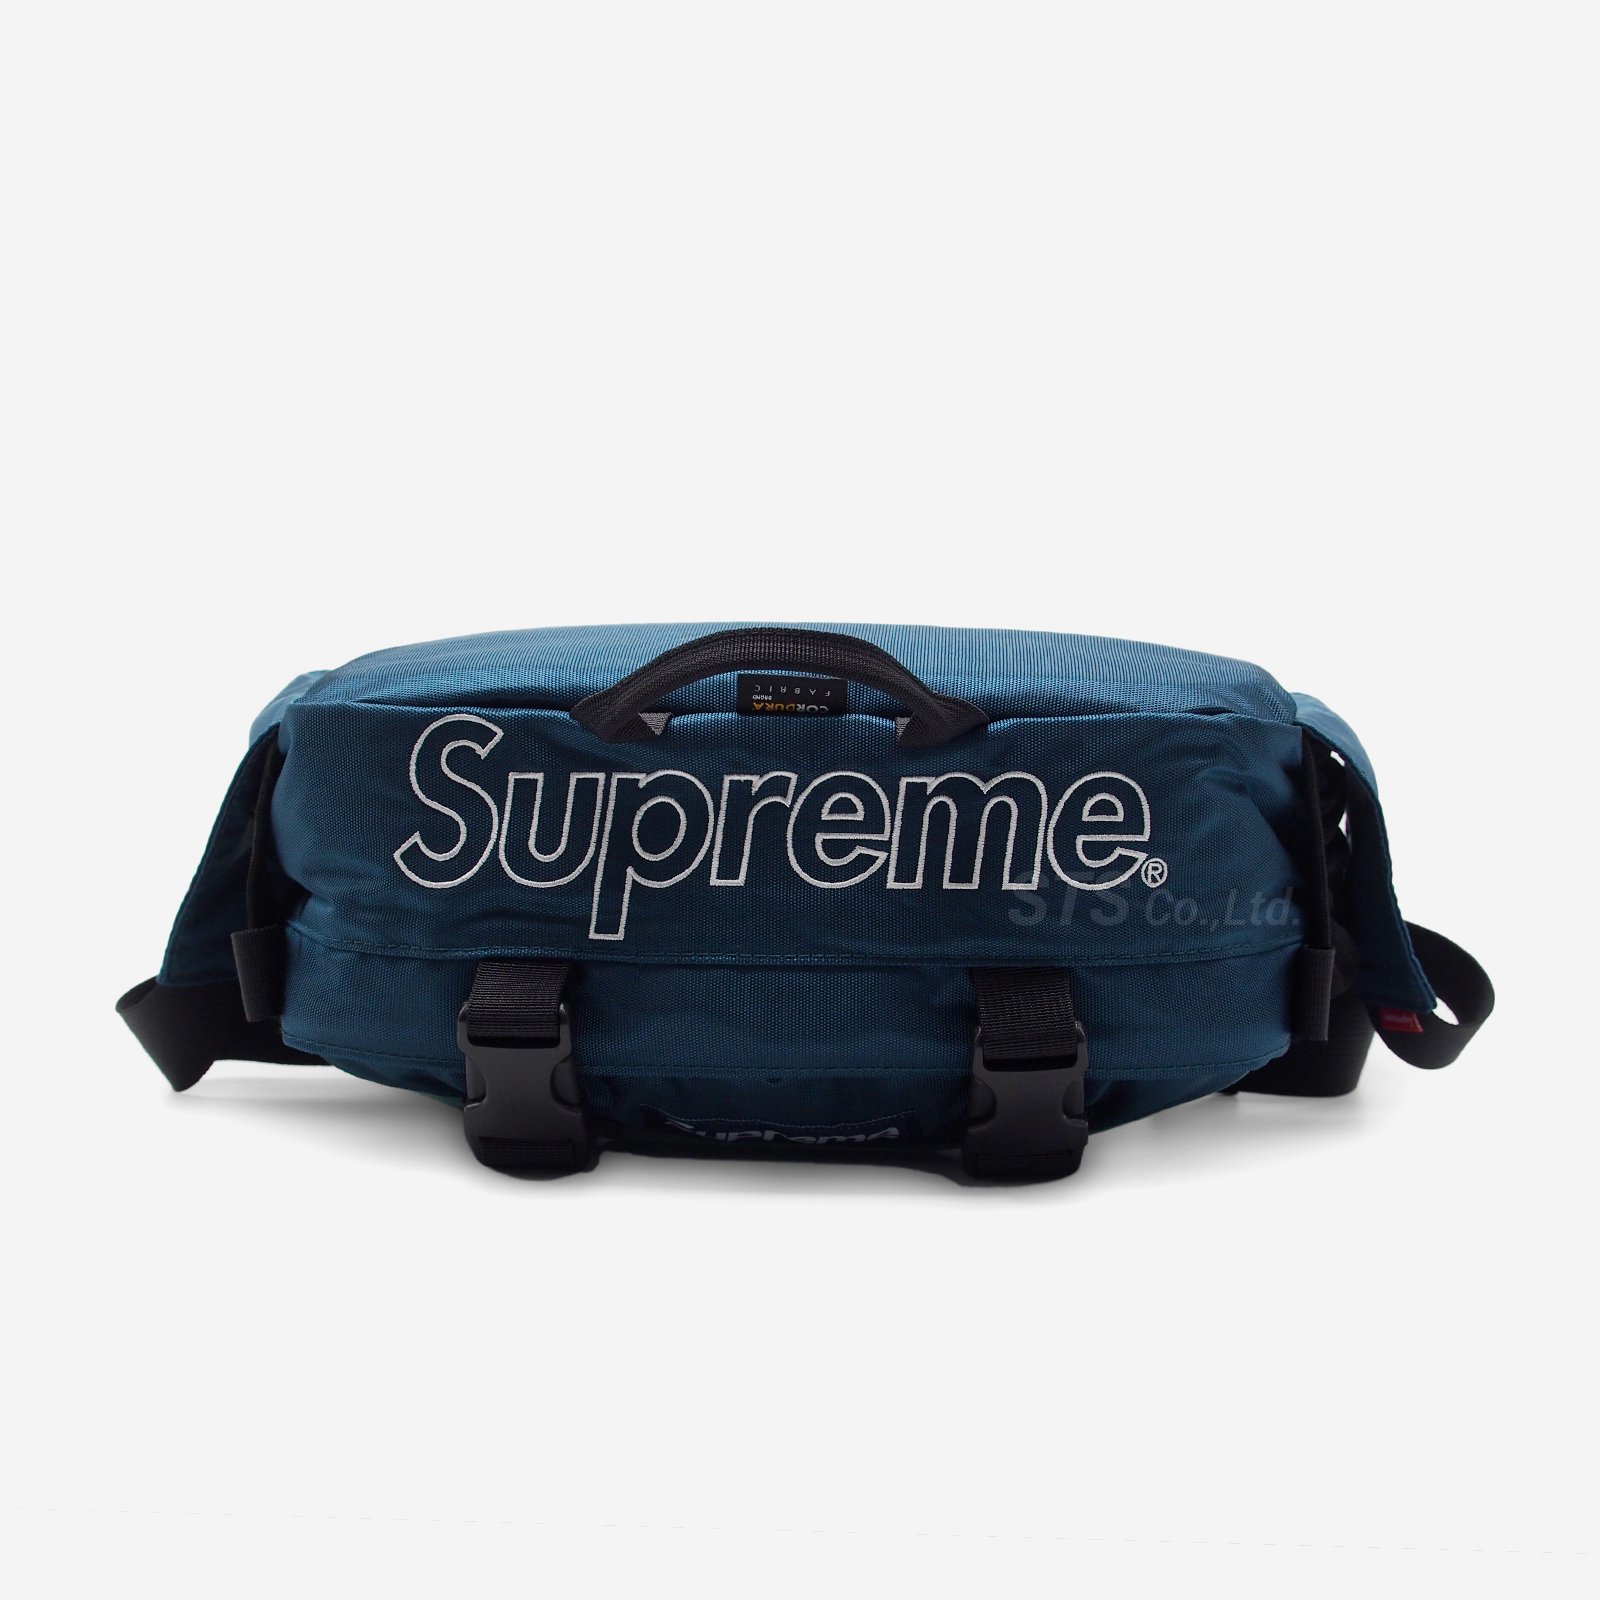 Supreme - Waist Bag - UG.SHAFT